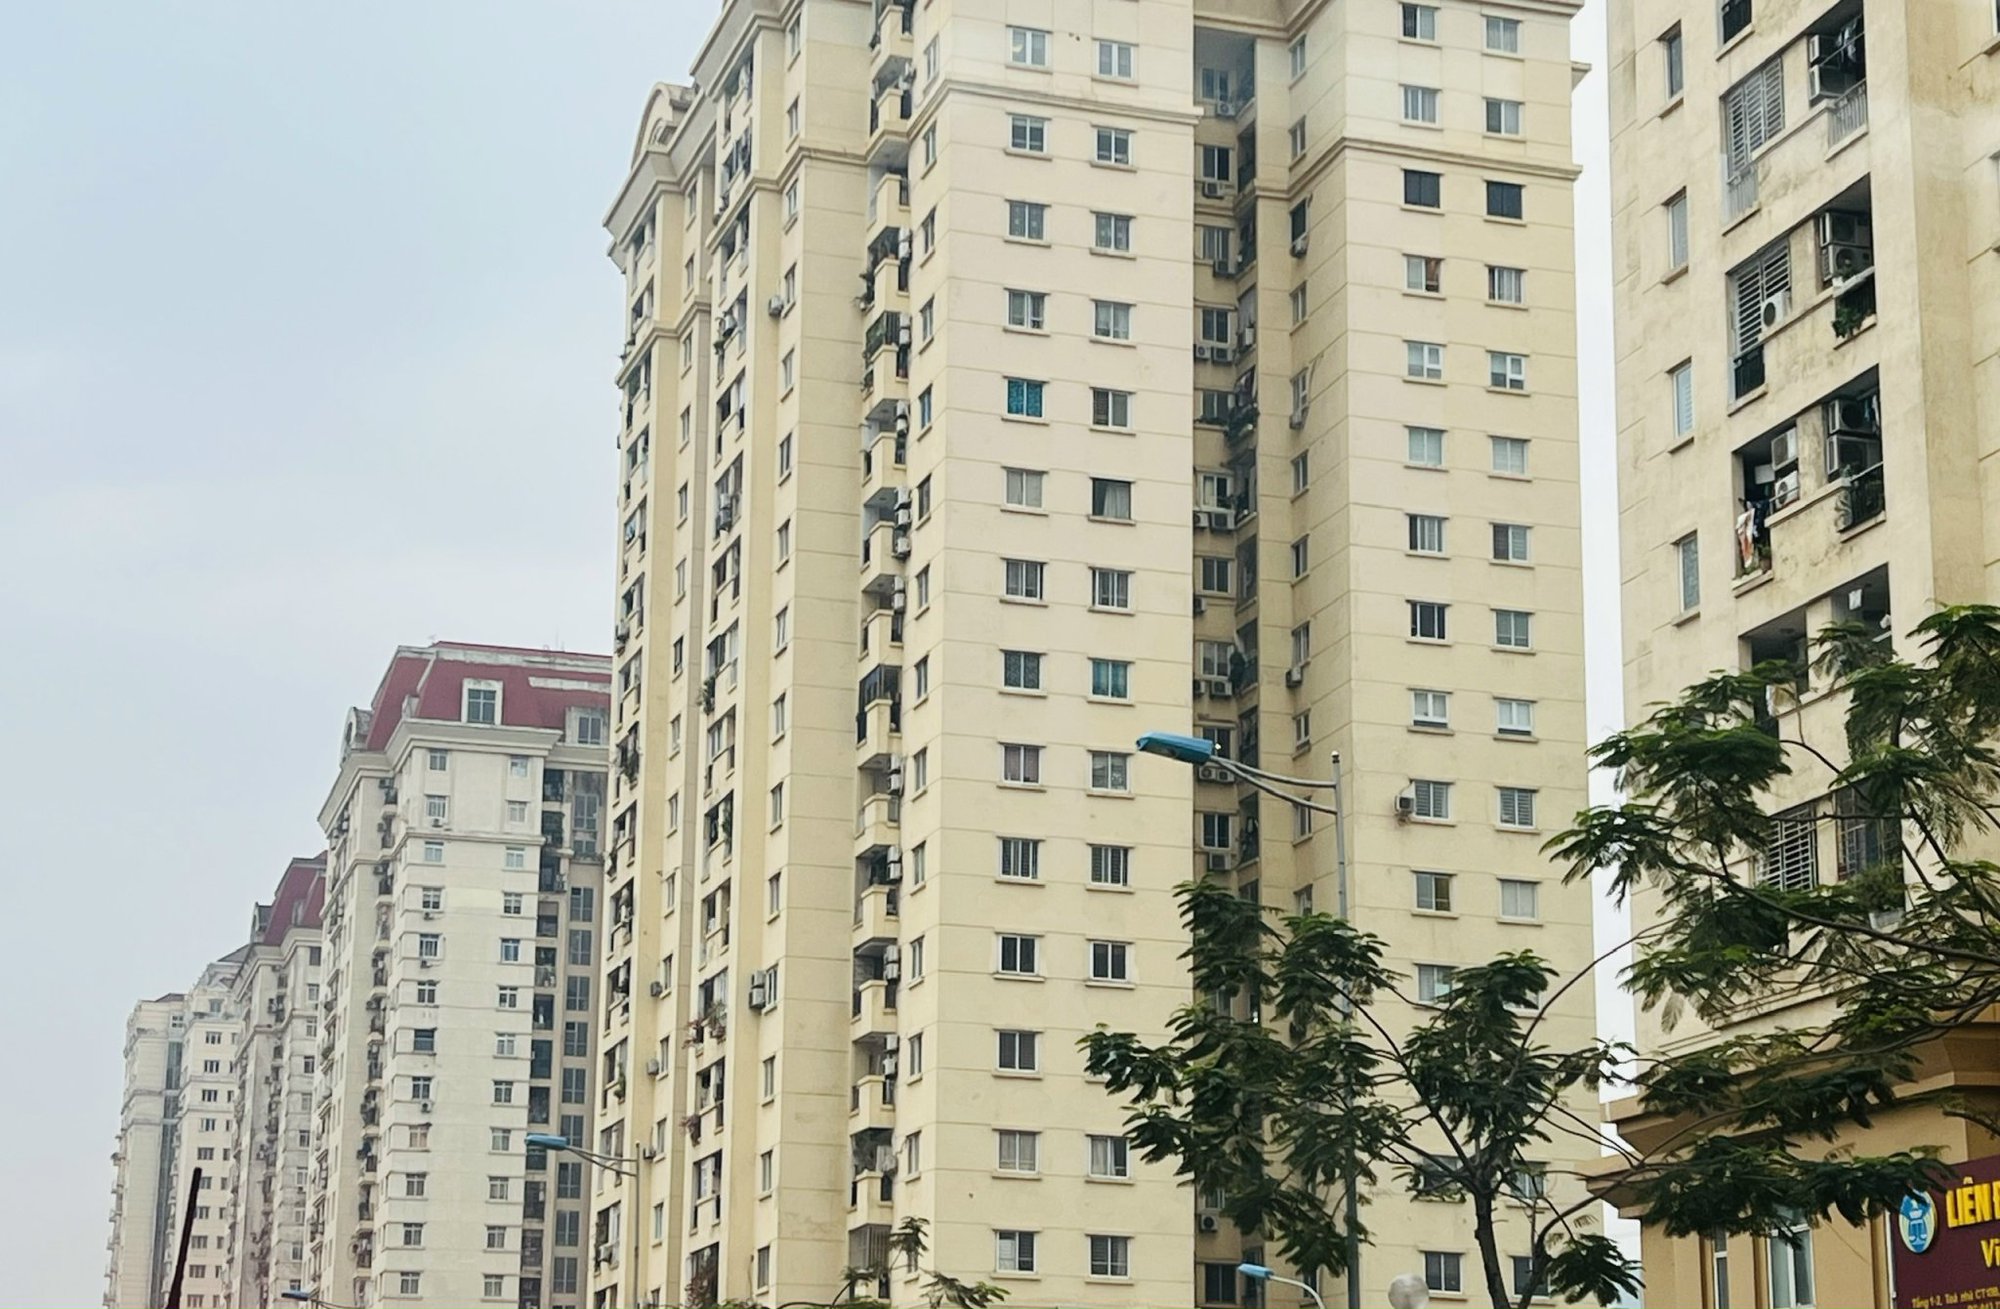 Nhà chung cư tái định cư: Nhà chung cư tái định cư là một chủ đề nóng bỏng trong thời gian gần đây tại Việt Nam. Xem các hình ảnh liên quan đến chủ đề này để hiểu rõ hơn về sự phát triển của đô thị và những ảnh hưởng của nó đến cộng đồng.